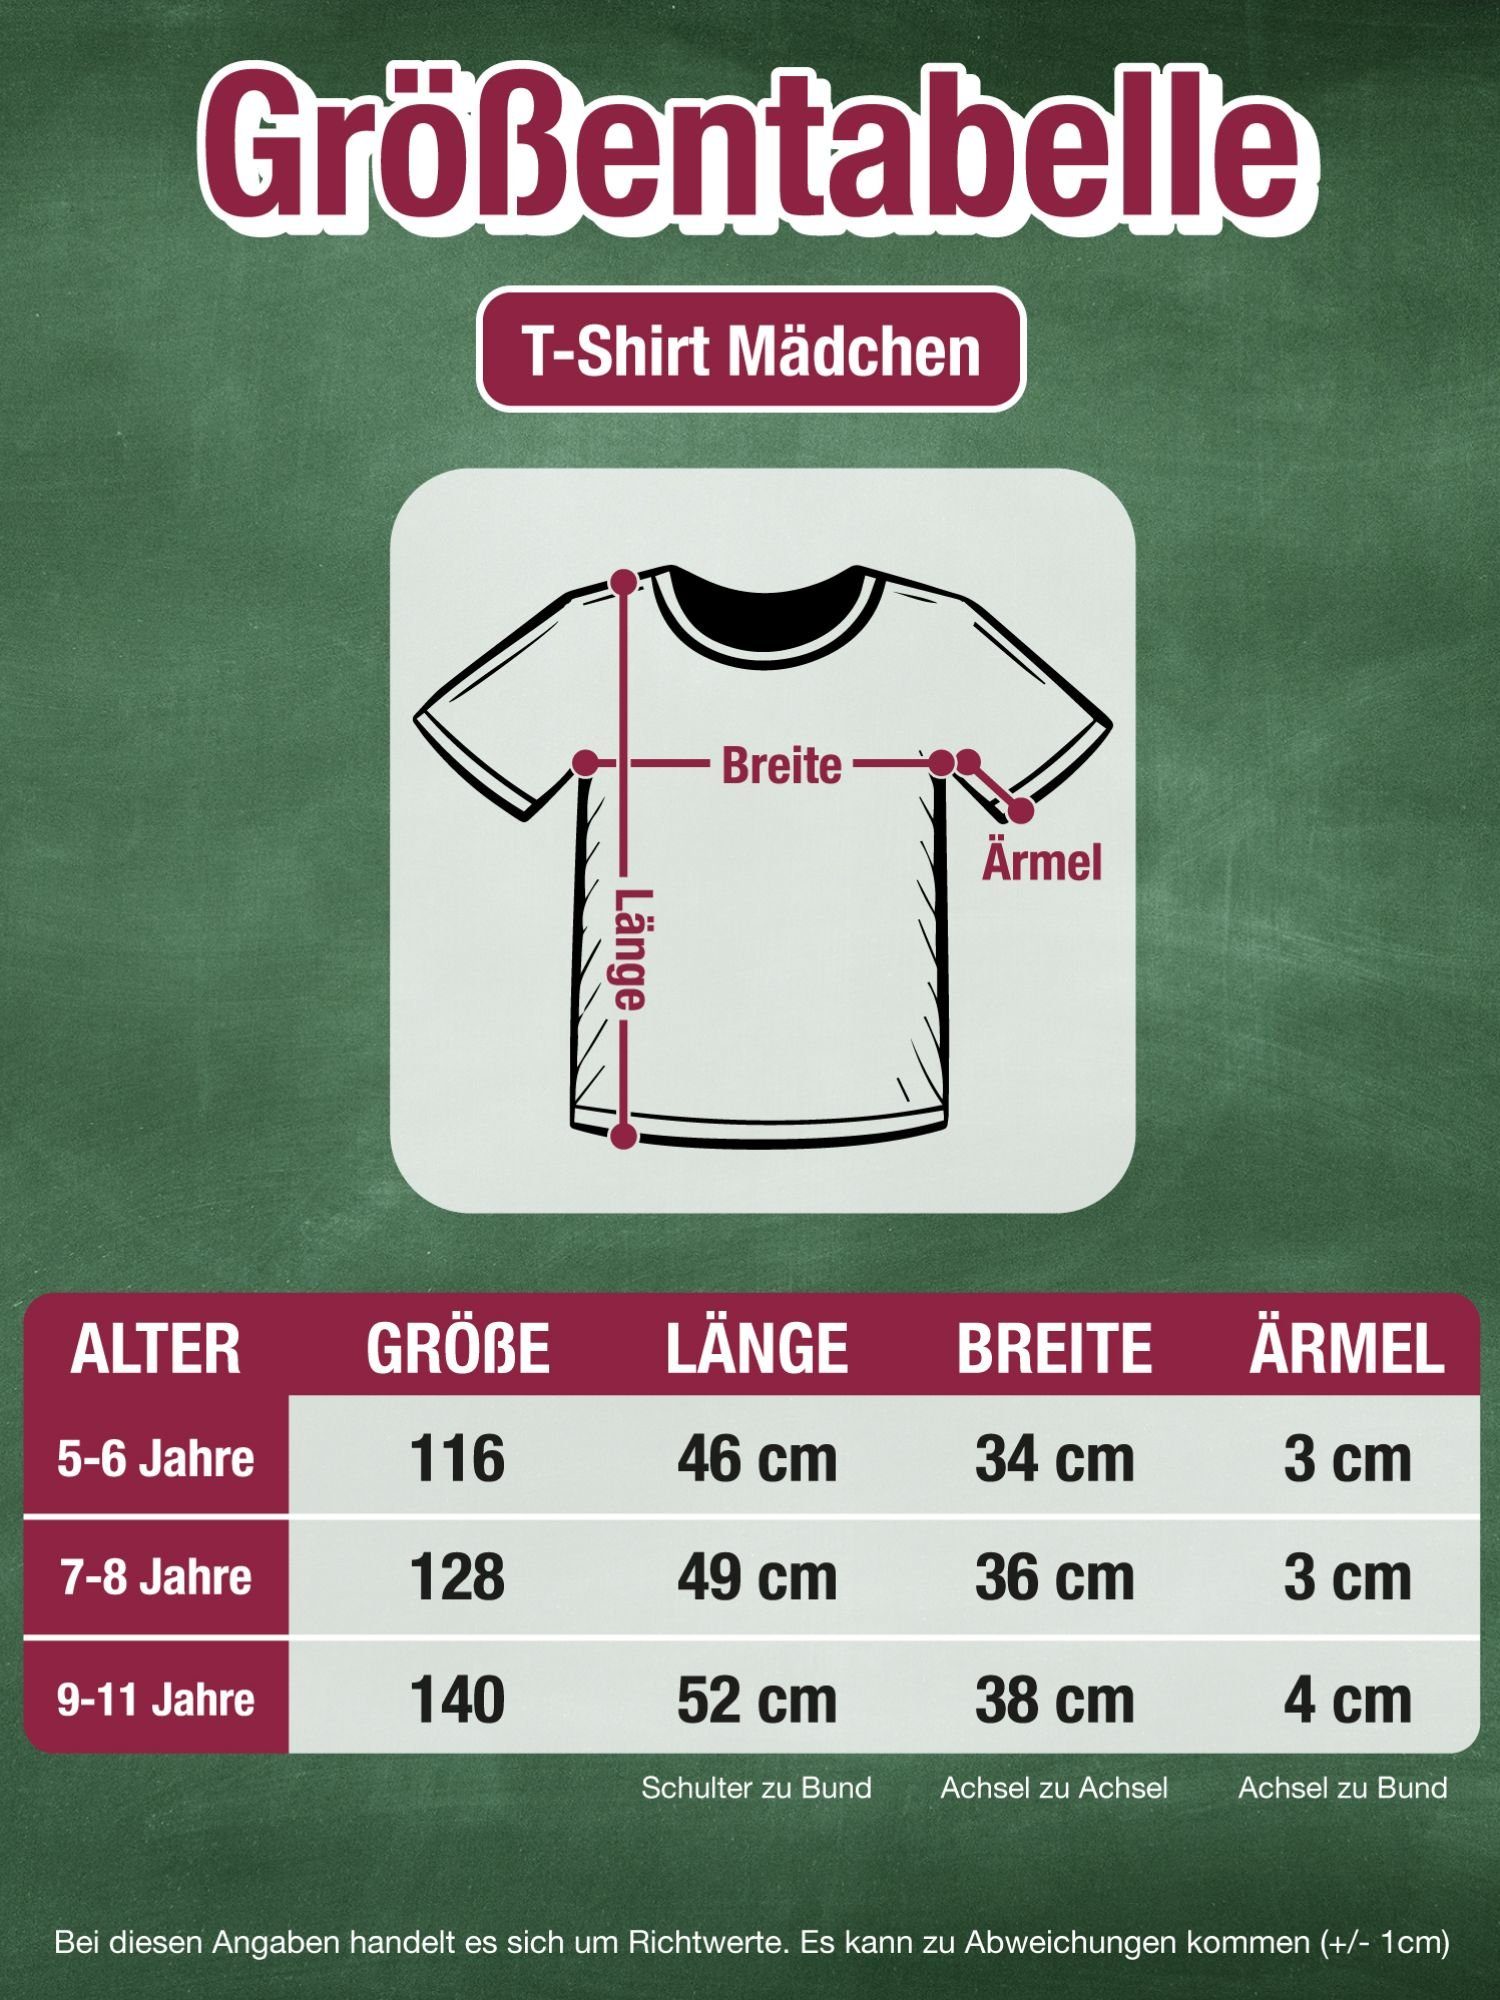 T-Shirt Shirtracer Vorschulkind Geschenke ich Fuchsia 2 Vorschulkinder Hurra türkis ein bin